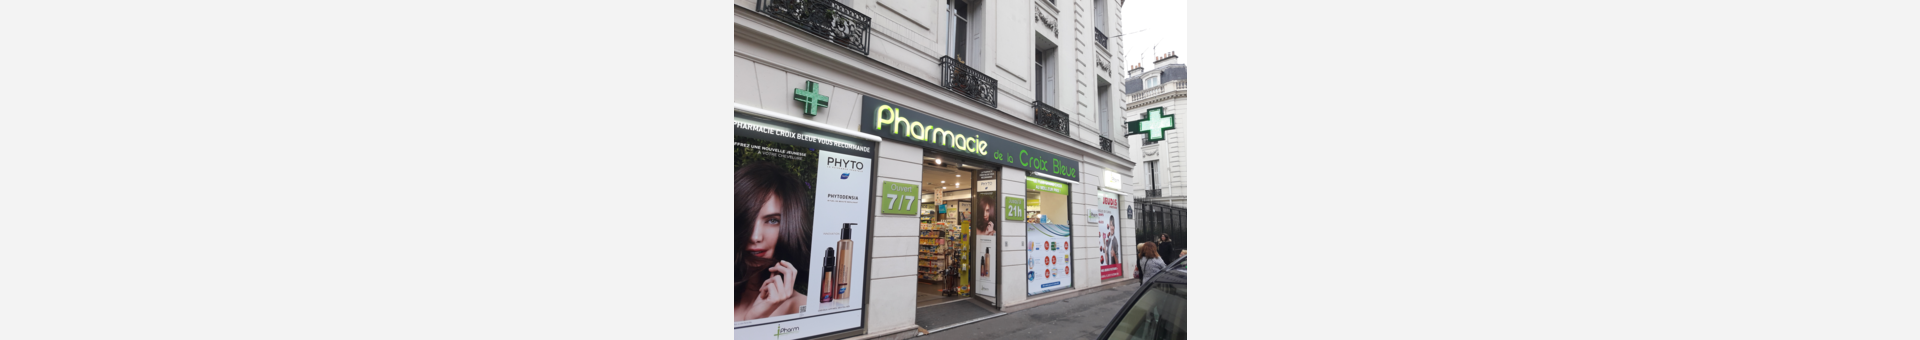 Pharmacie De La Croix Bleue,Paris